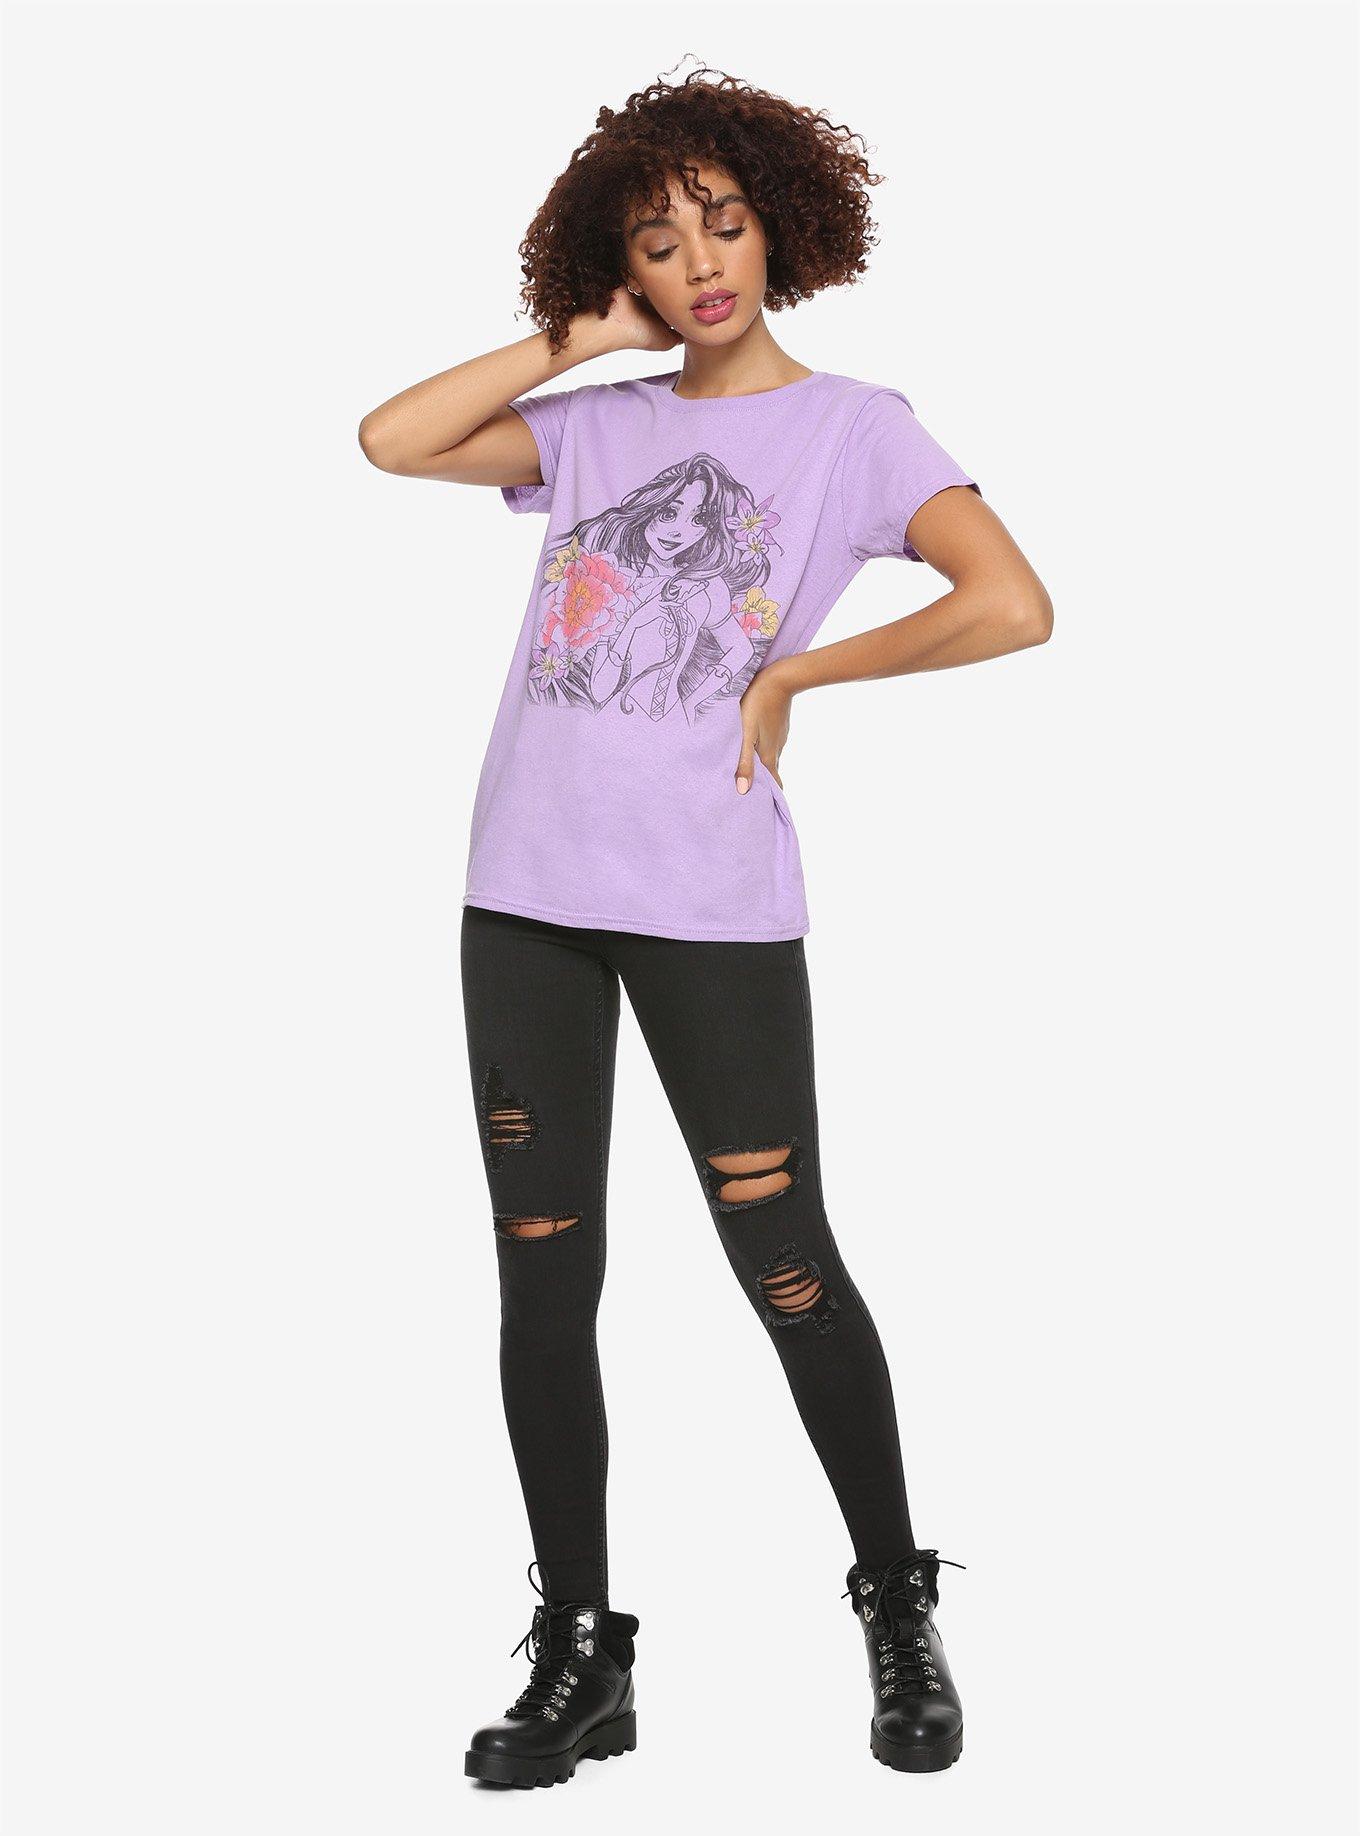 Disney Tangled Rapunzel Flower Sketch Girls T-shirt, MULTI, alternate